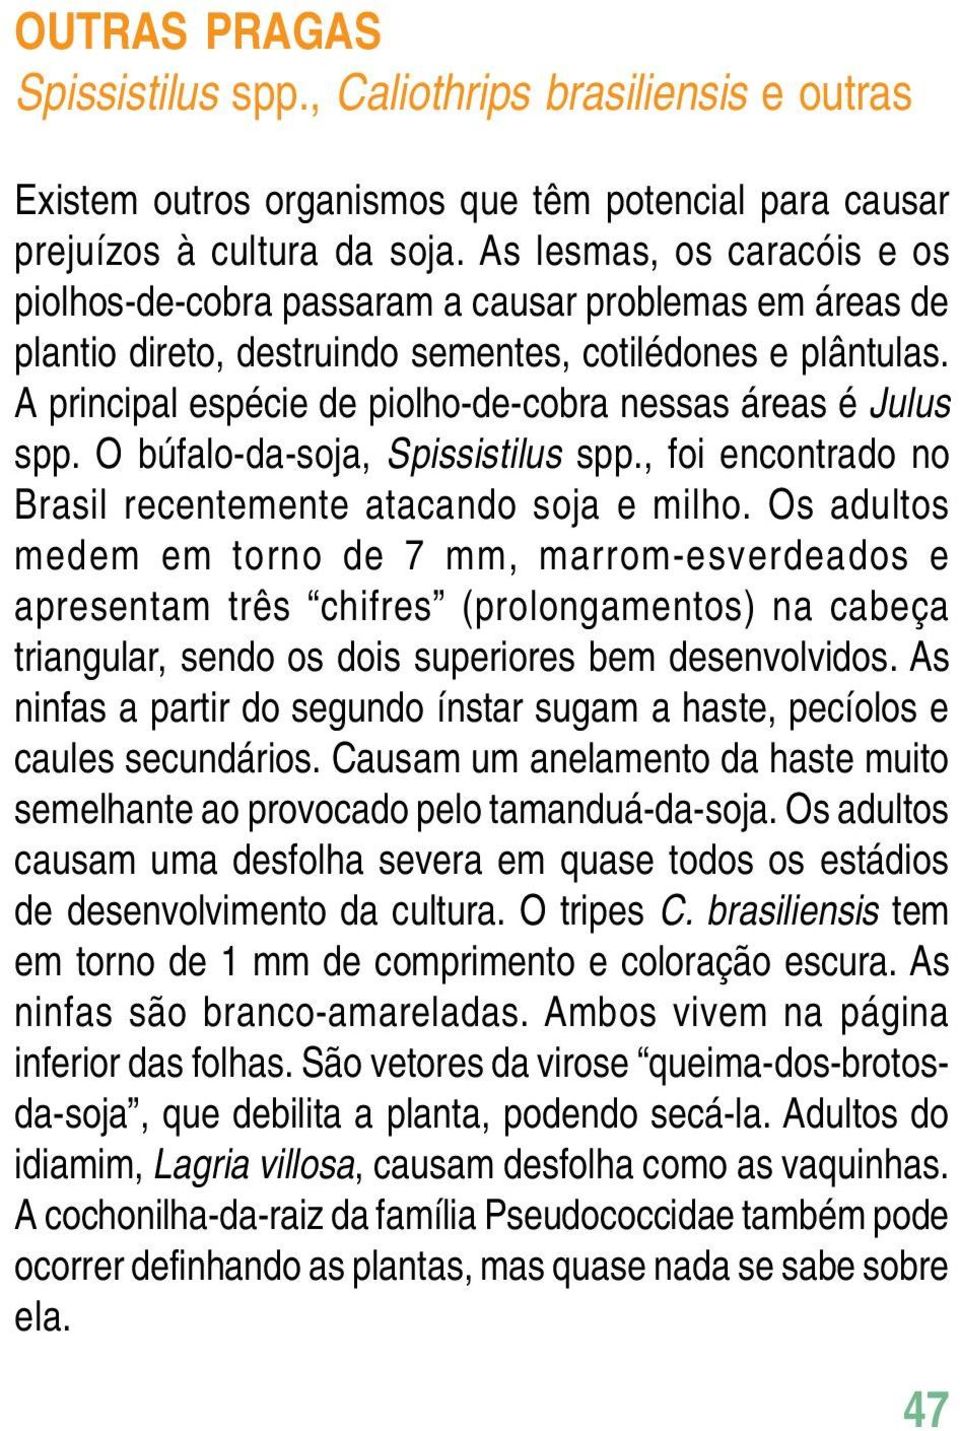 A principal espécie de piolho-de-cobra nessas áreas é Julus spp. O búfalo-da-soja, Spissistilus spp., foi encontrado no Brasil recentemente atacando soja e milho.